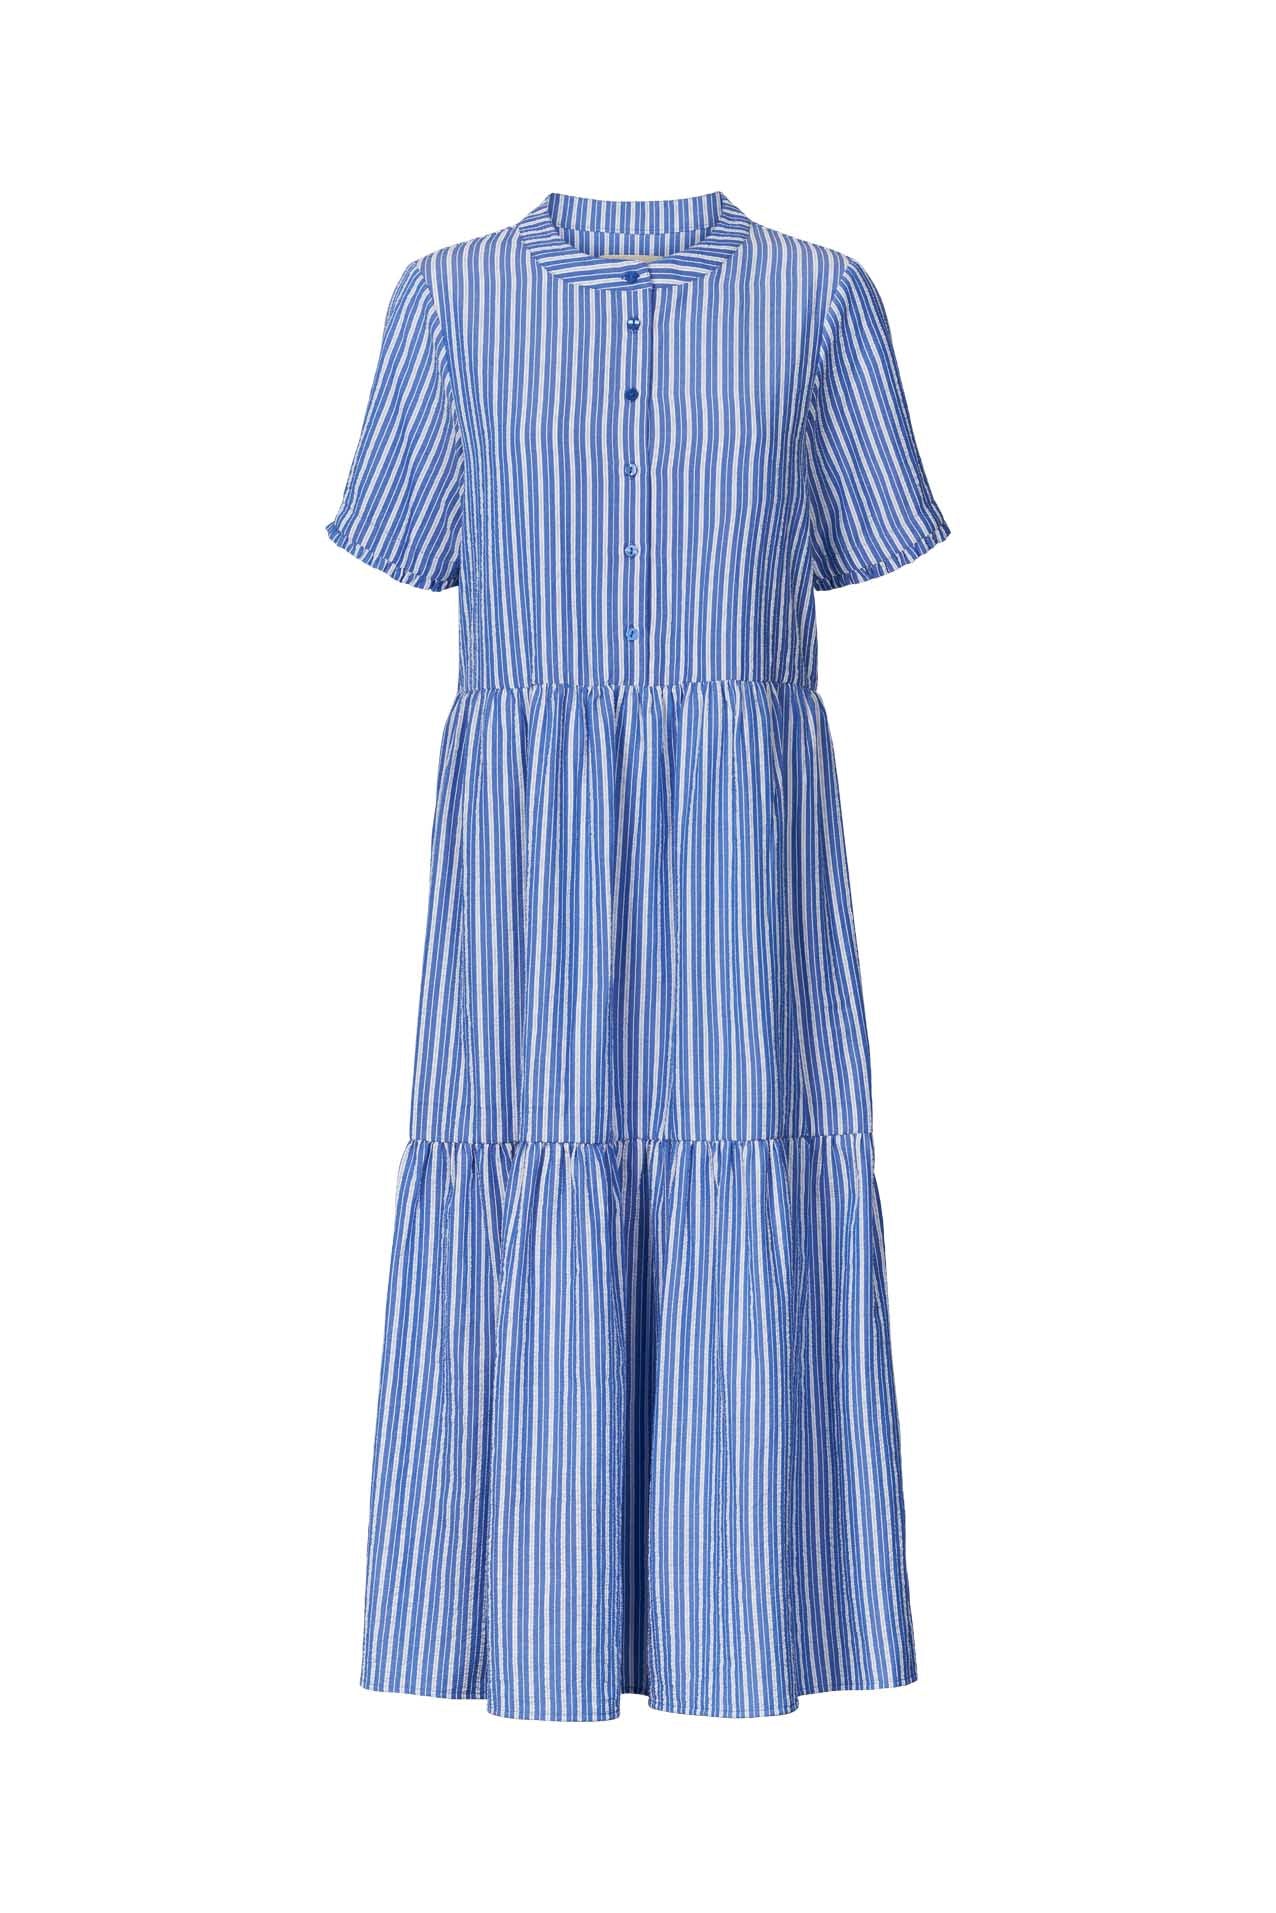 Lollys Laundry Fie Dress - Blue Stripe